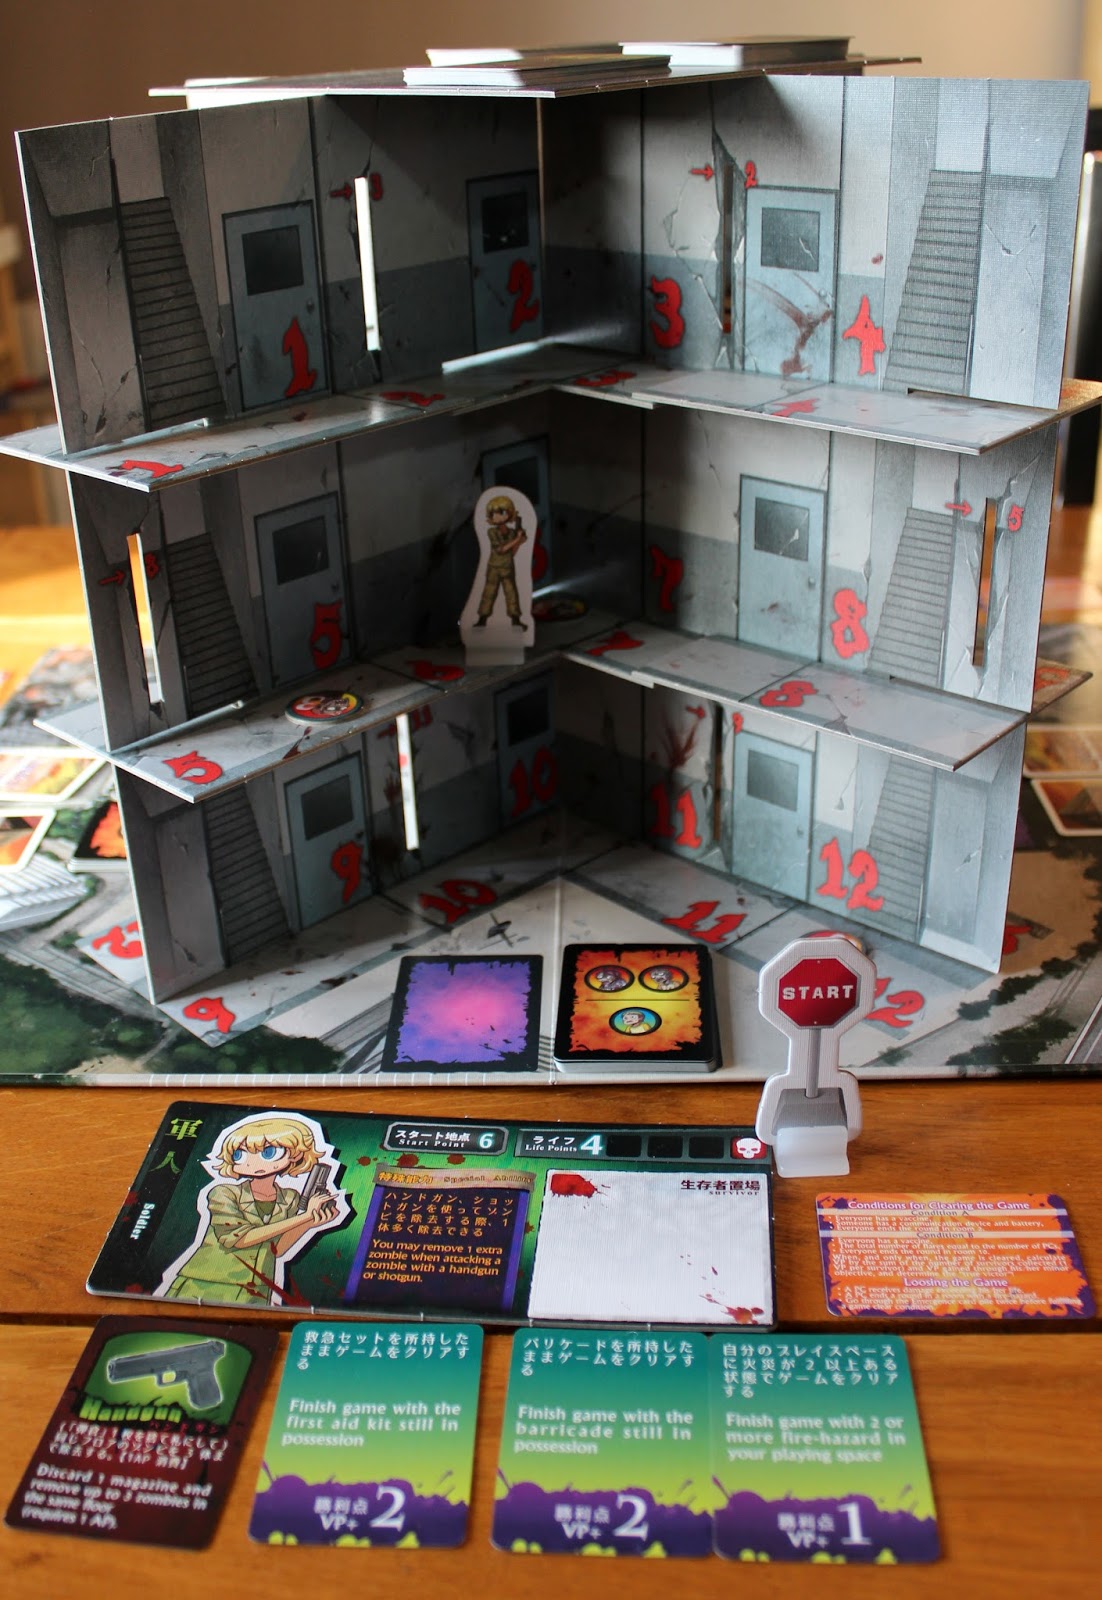 Zombie Tower: salve-se de zumbis em uma torre 3D - Tábula Quadrada